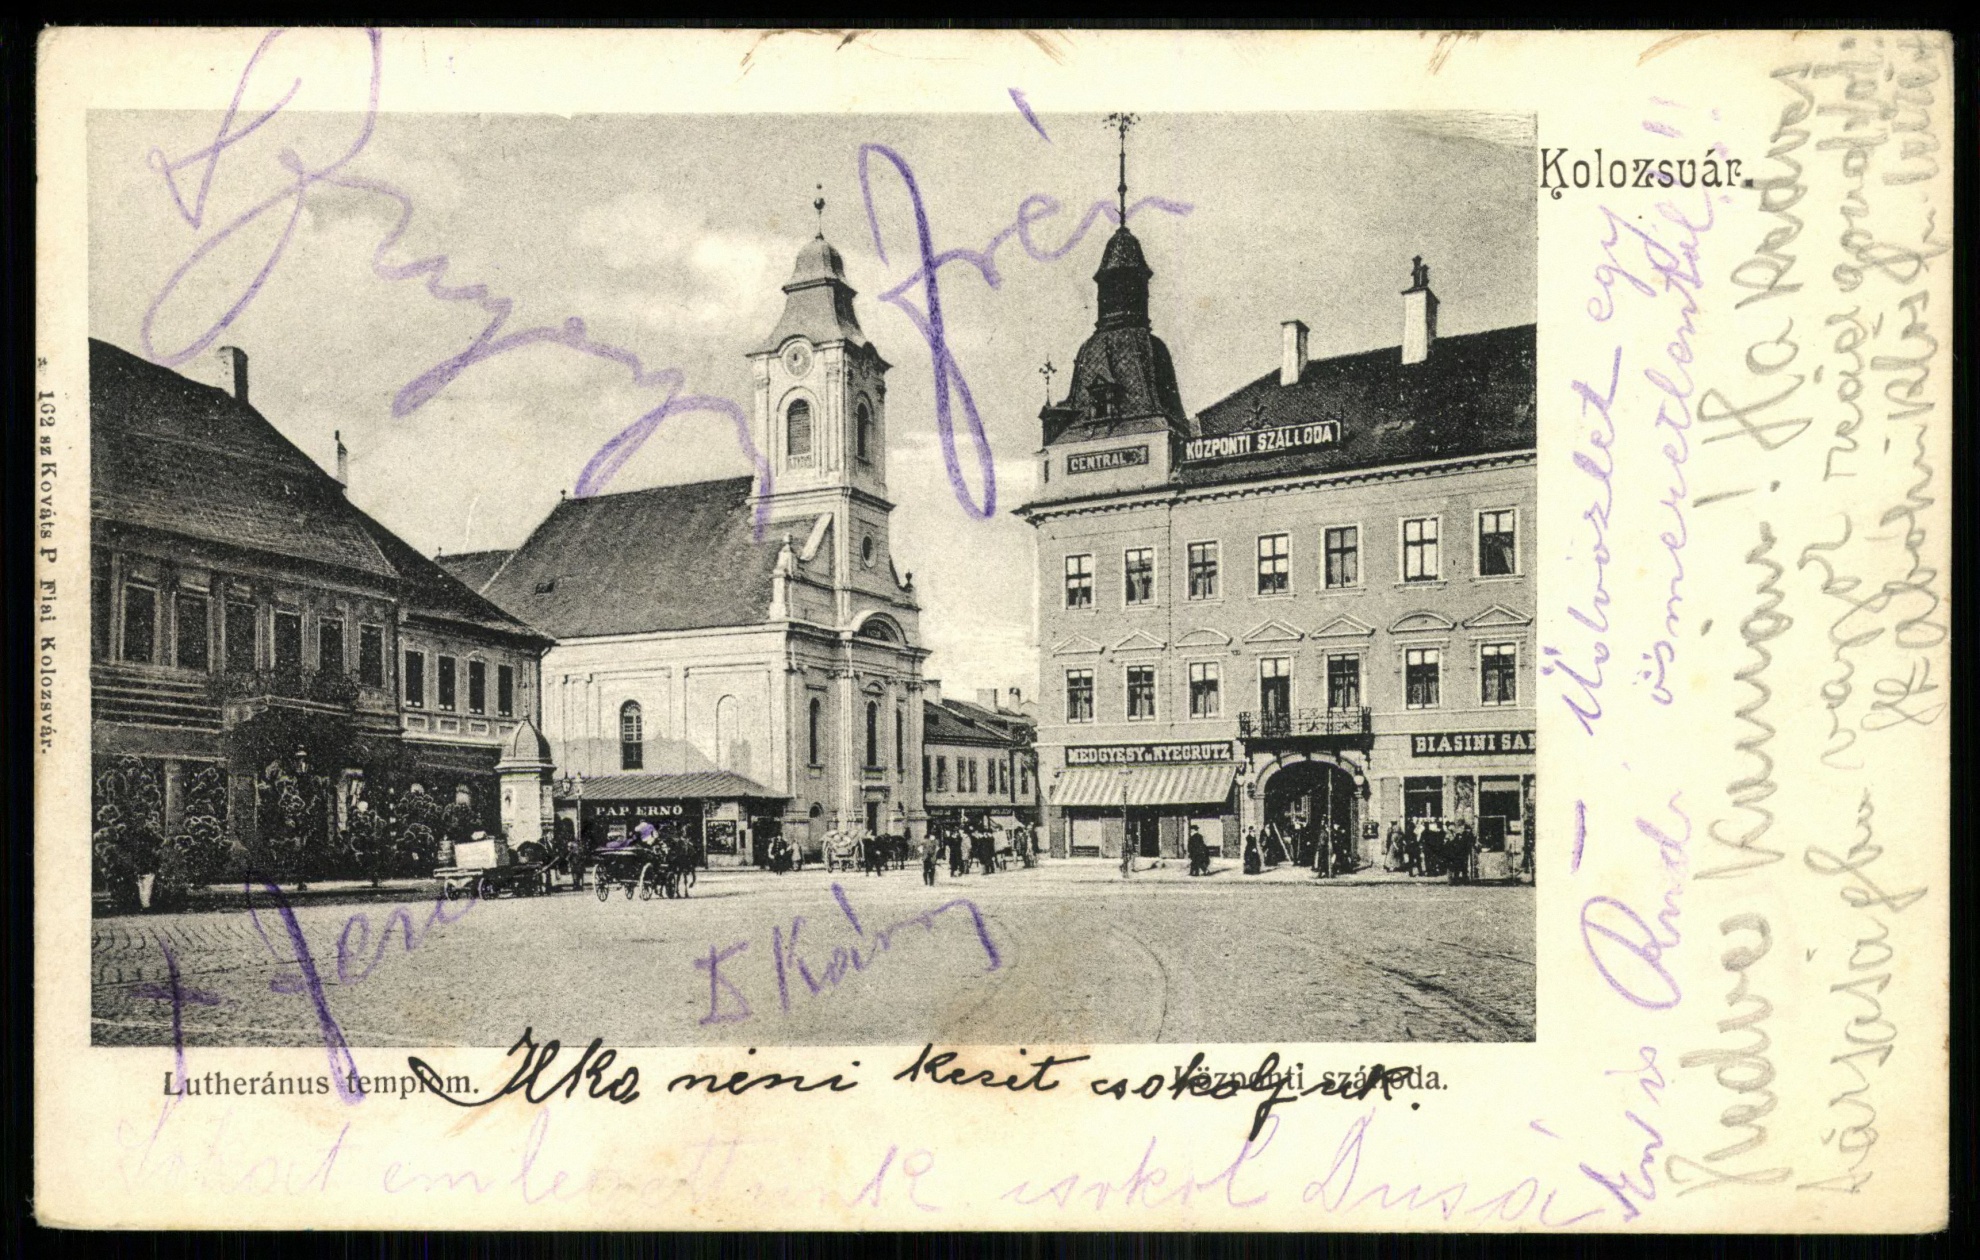 Kolozsvár Lutheránus templom. Központi szálloda (Magyar Kereskedelmi és Vendéglátóipari Múzeum CC BY-NC-ND)